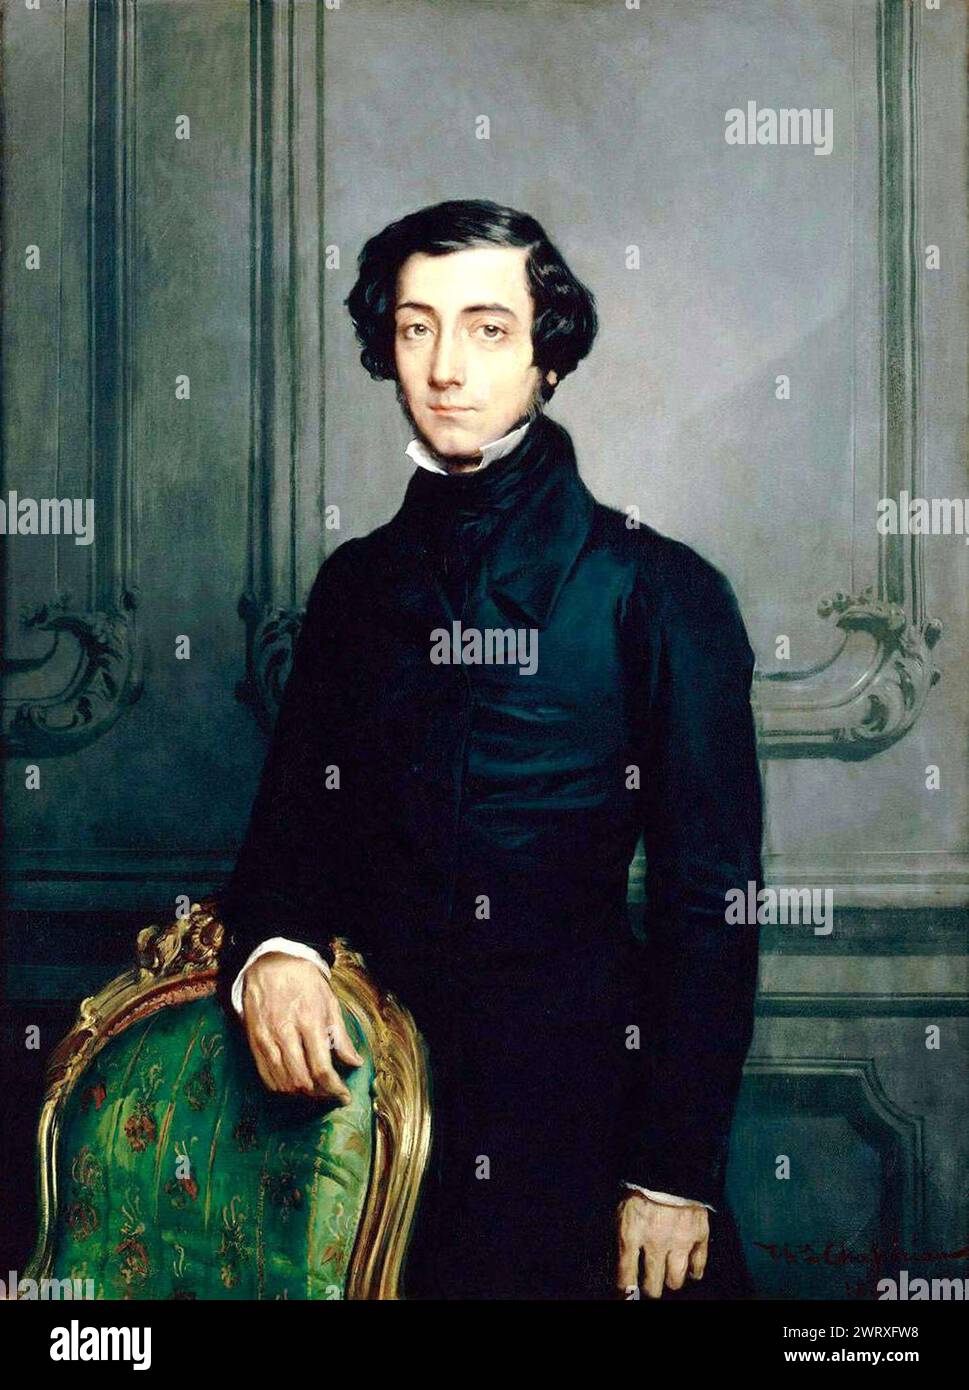 Alexis de Tocqueville, Alexis Charles Henri Clérel, comte de Tocqueville (1805 – 1859), Tocqueville, aristocrate, diplomate, philosophe, et historien. Banque D'Images